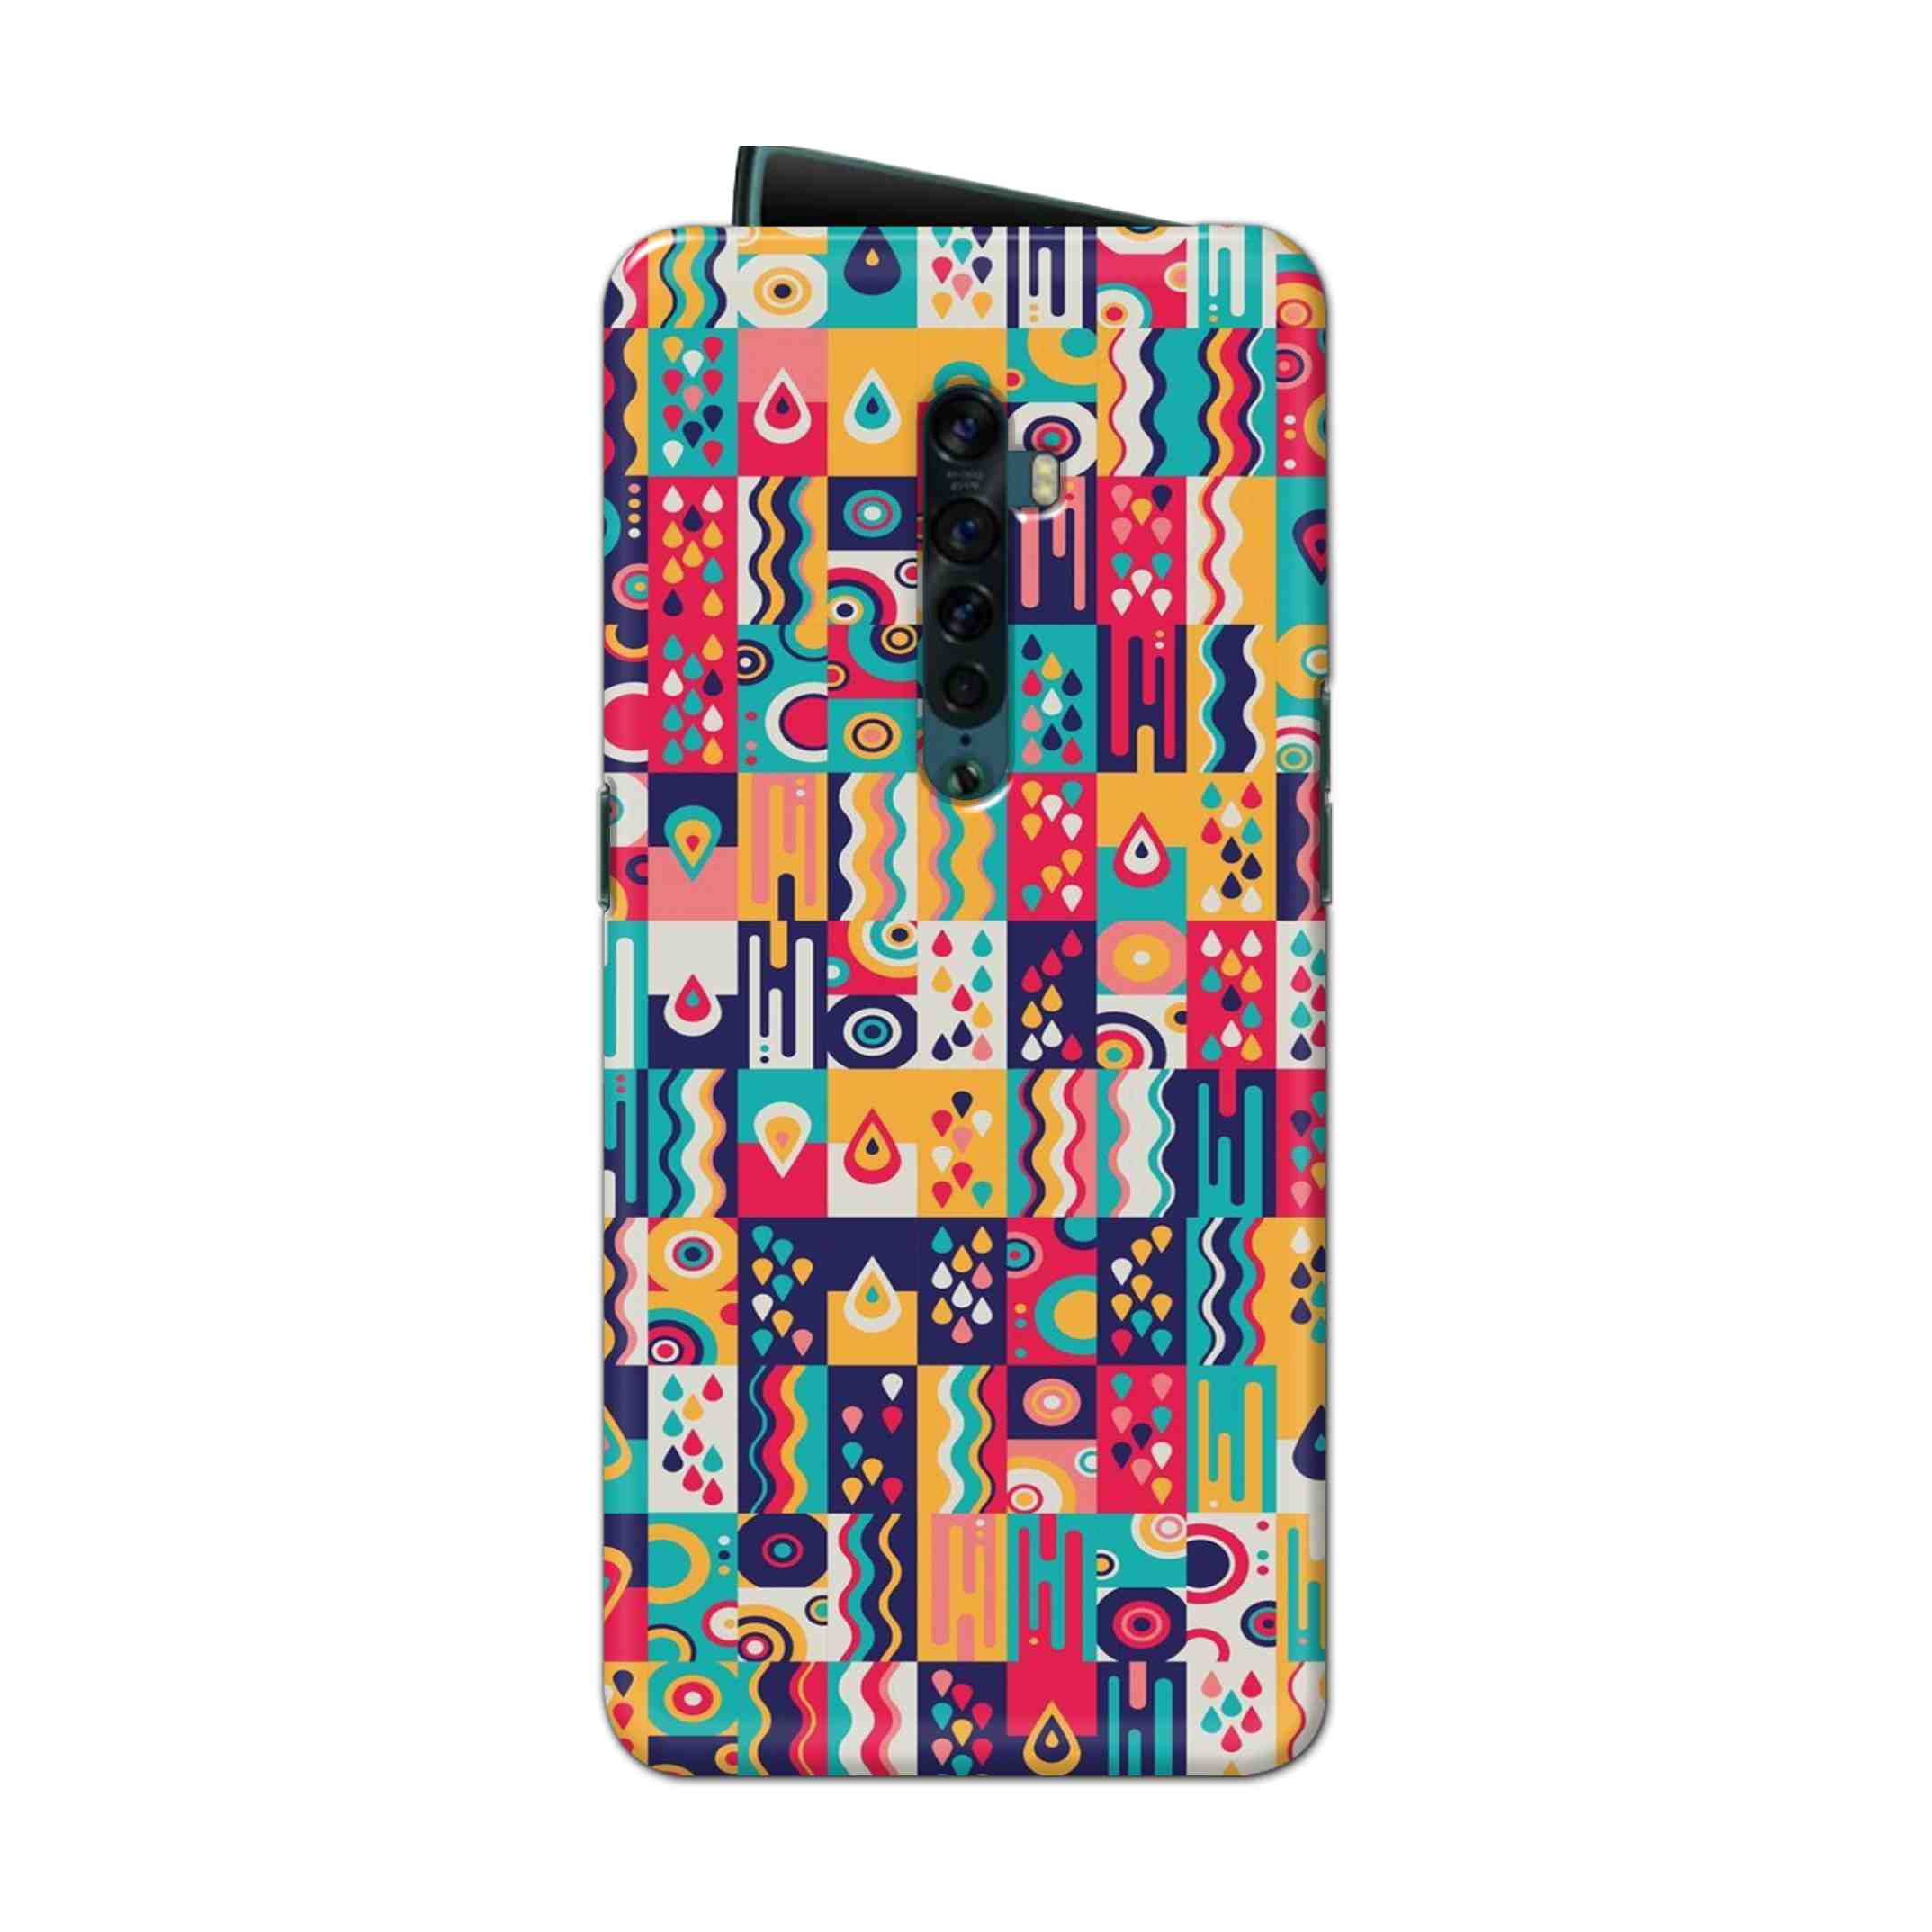 Buy Art Hard Back Mobile Phone Case Cover For Oppo Reno 2 Online